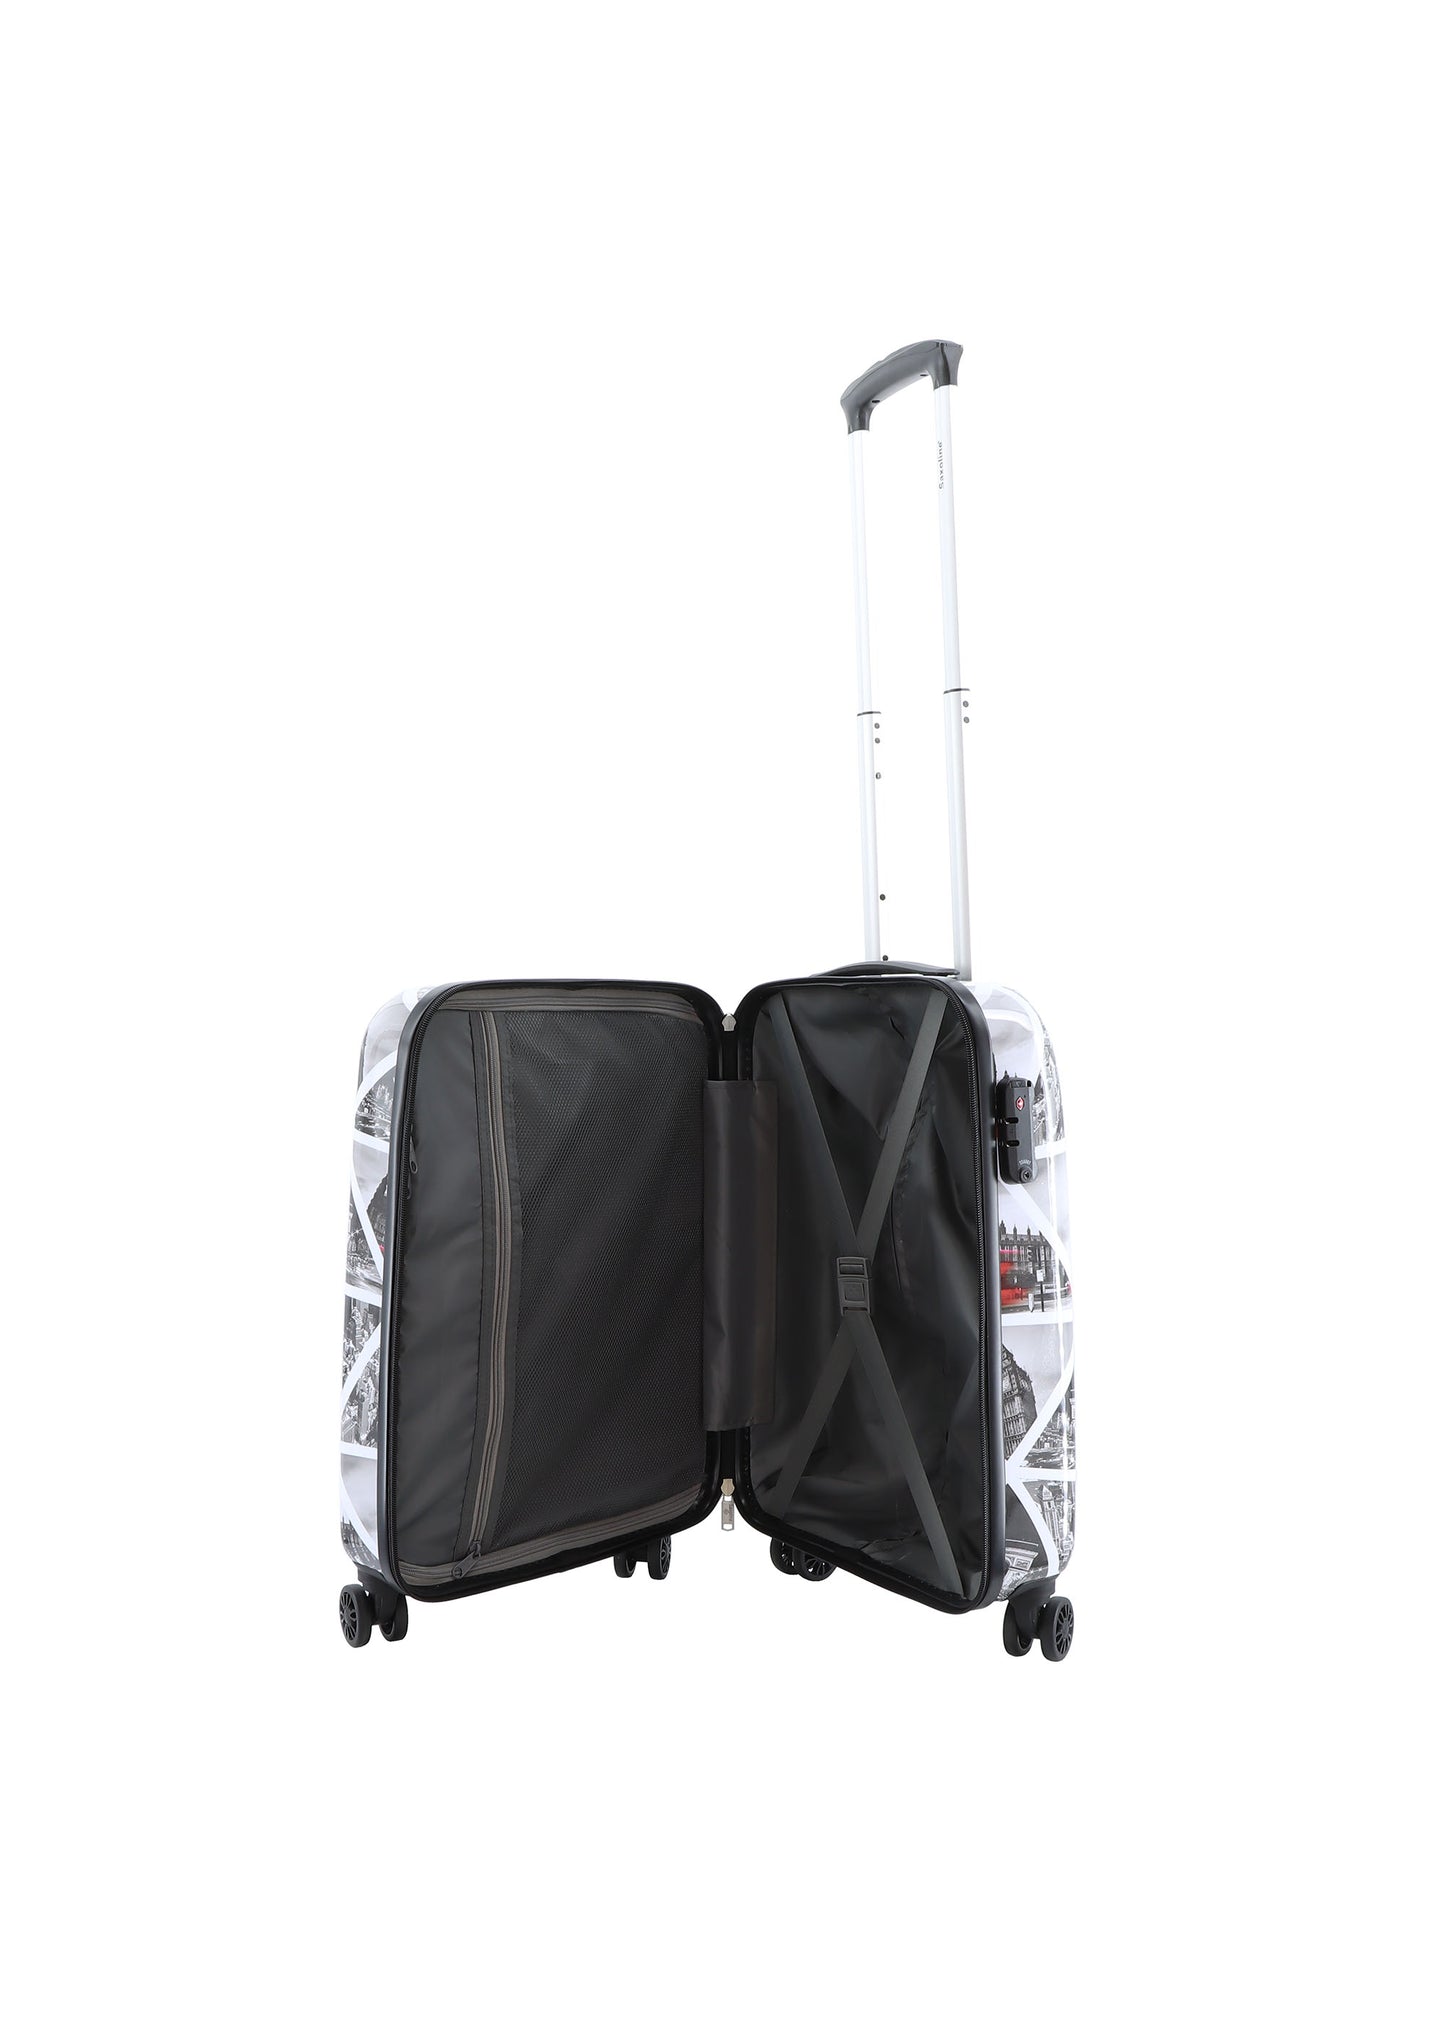 Valise rigide pour bagage à main Saxoline / Trolley / Valise de voyage - 55cm (Petite) - Impression de villes 